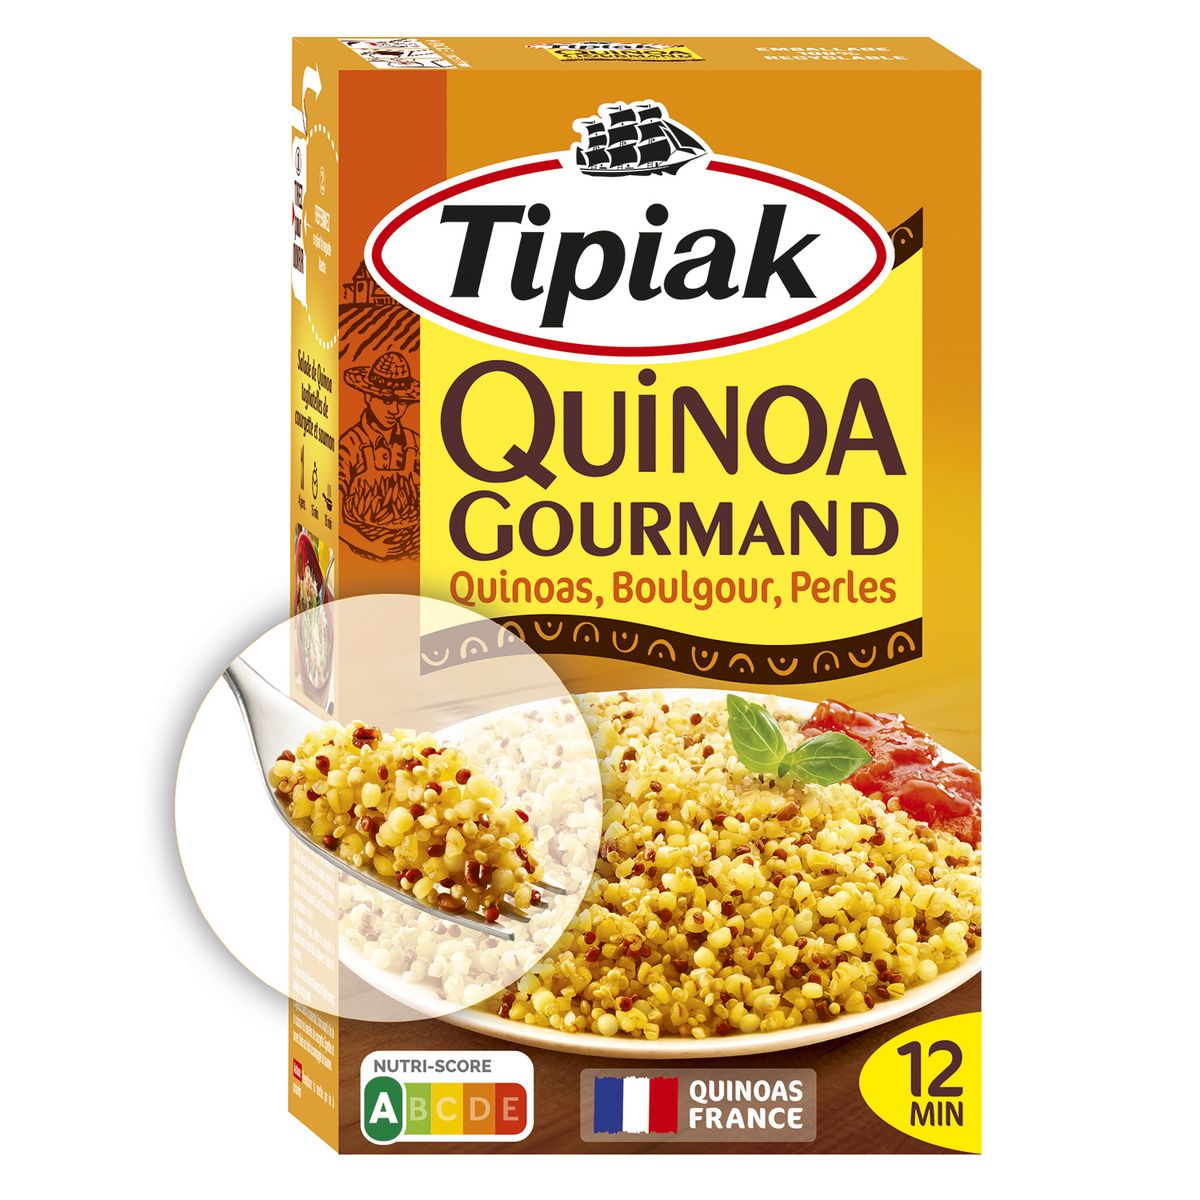 TIPIAK Quinoa gourmand 3 quinoa et blé 400g